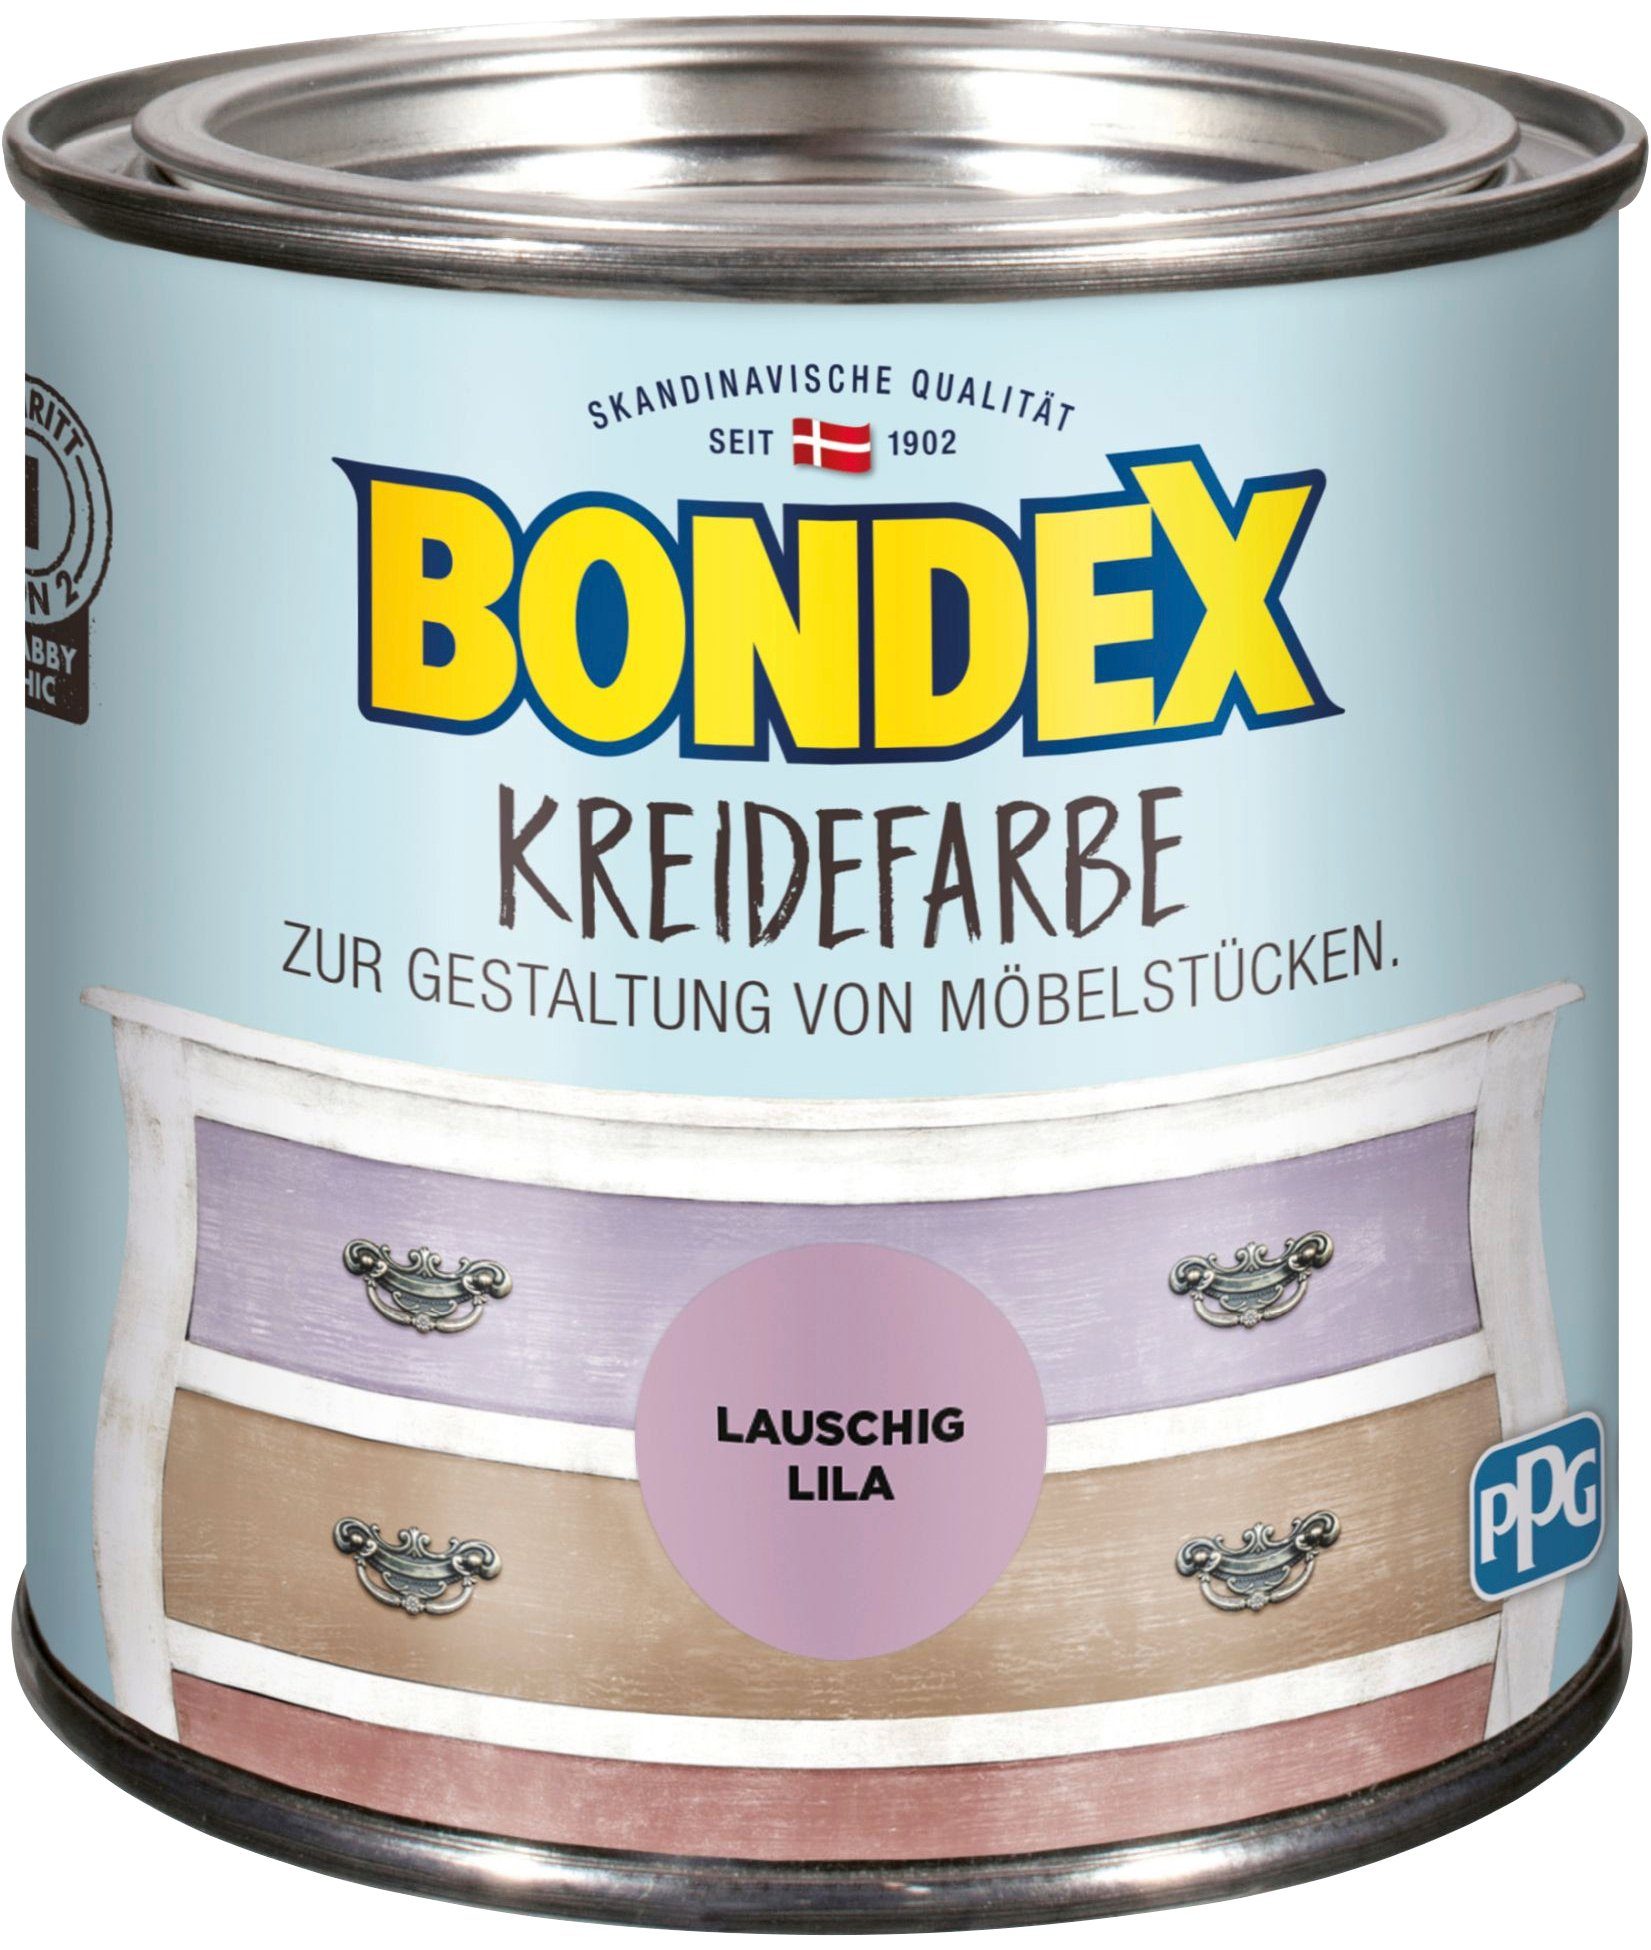 Bondex Kreidefarbe KREIDEFARBE, zur Gestaltung von Möbelstücken, 0,5 l Lauschig Lila